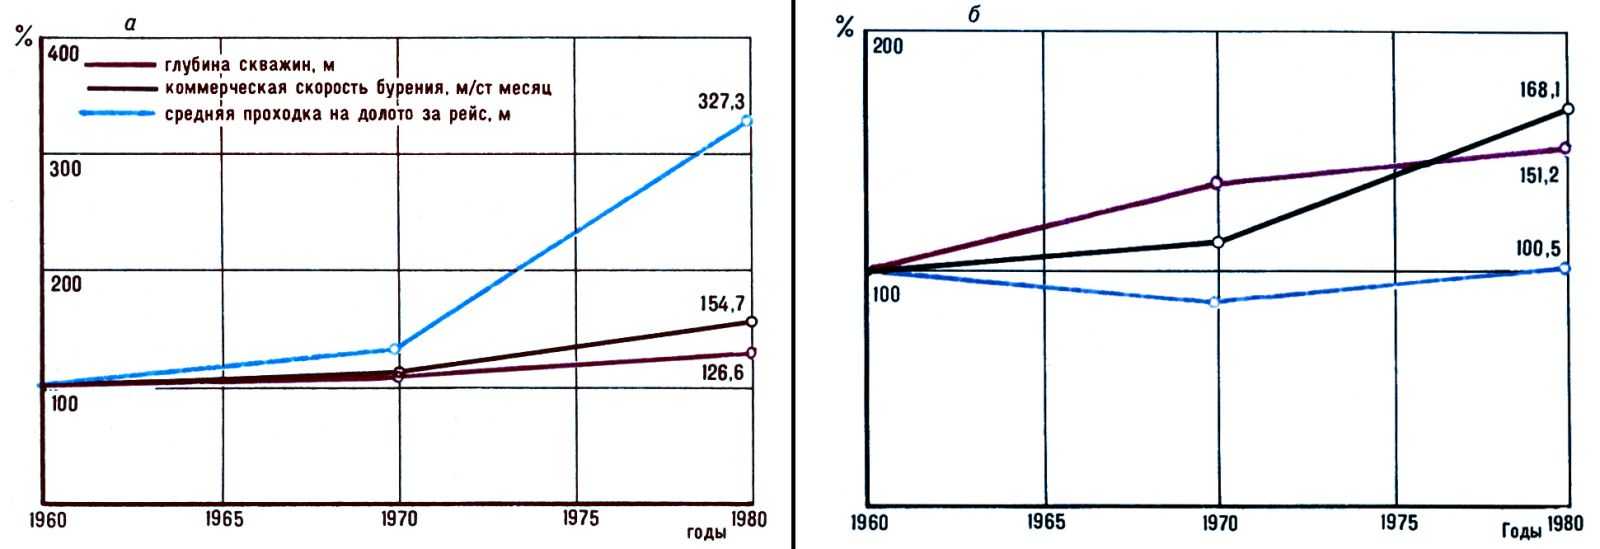 Динамика основных показателей буровых работ в СССР в эксплуатационном бурении на <a href=